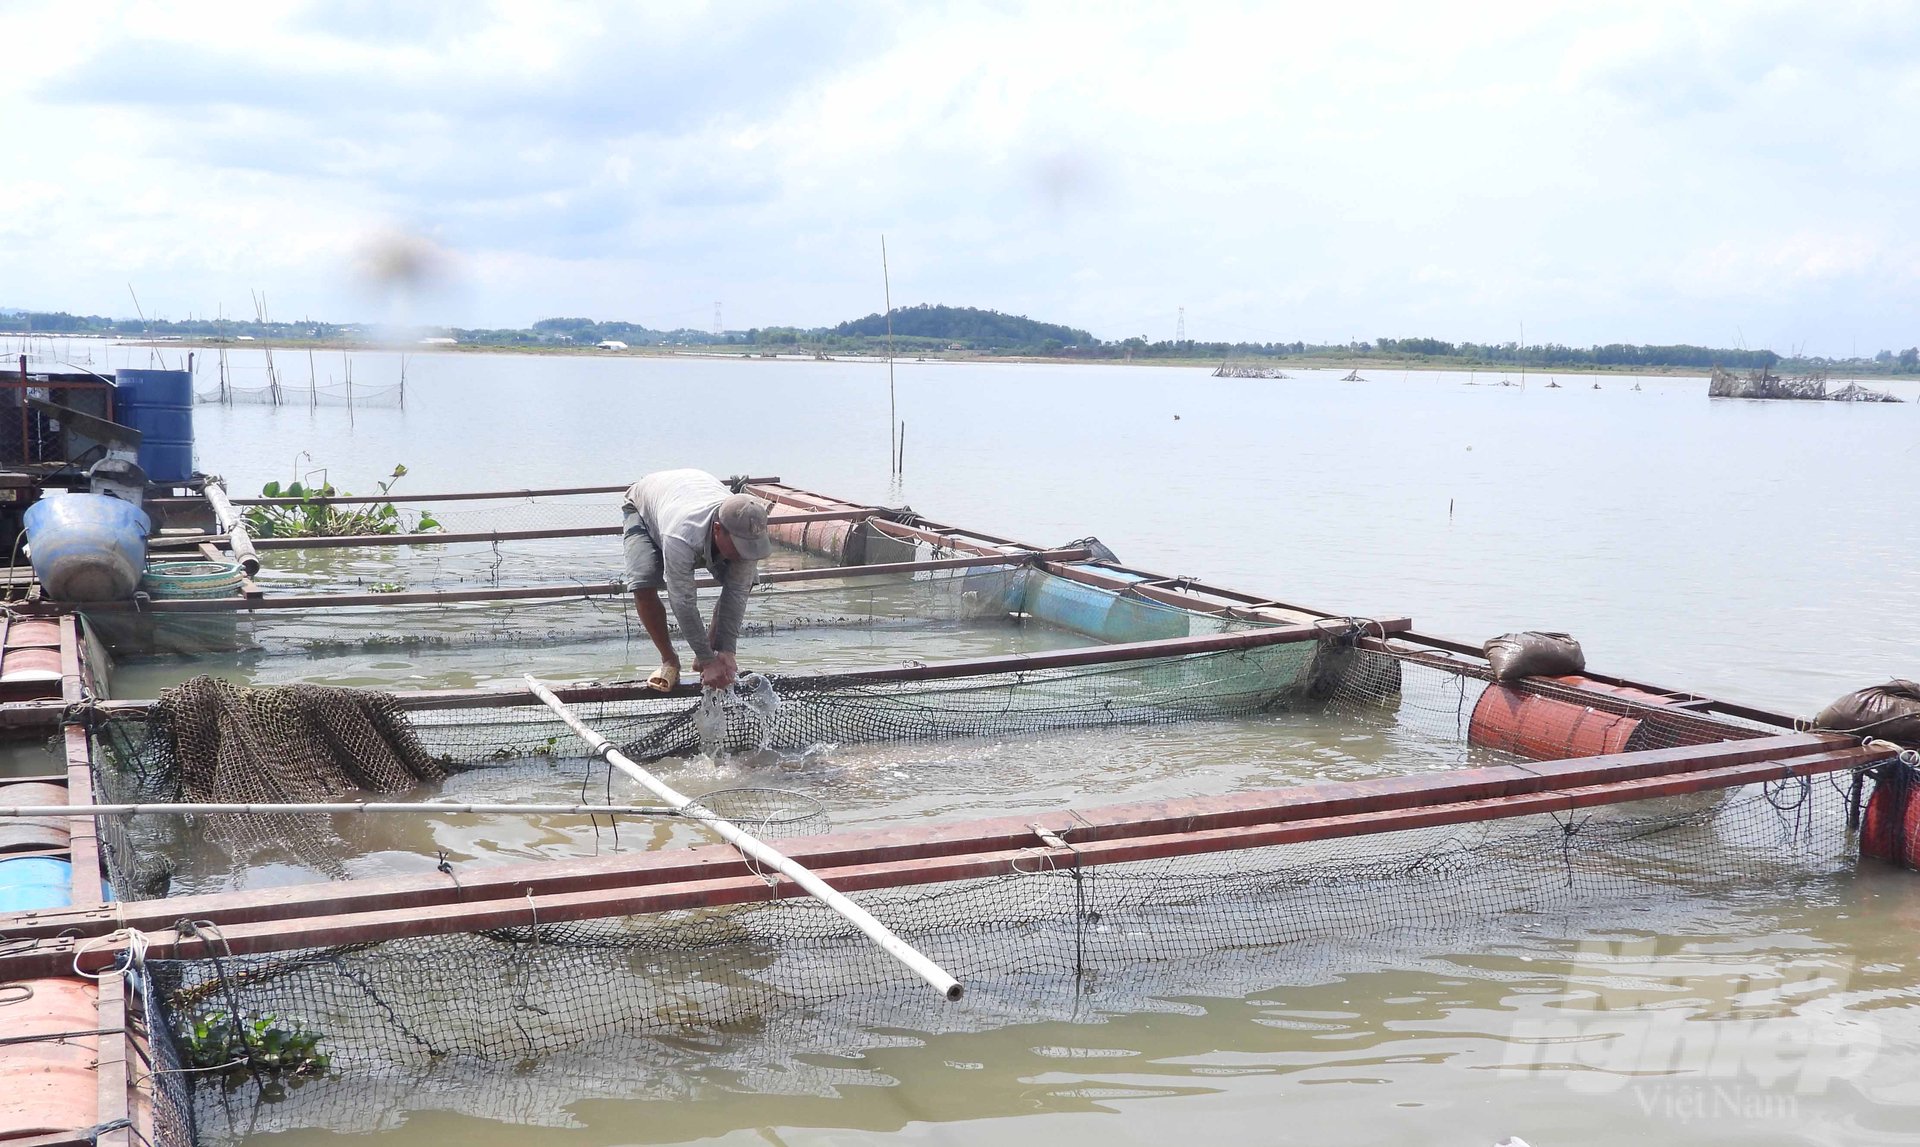 Nuôi cá lồng bè trên sông La Ngà tại Đồng Nai cho hiệu quả kinh tế cao. Ảnh: Trần Trung.